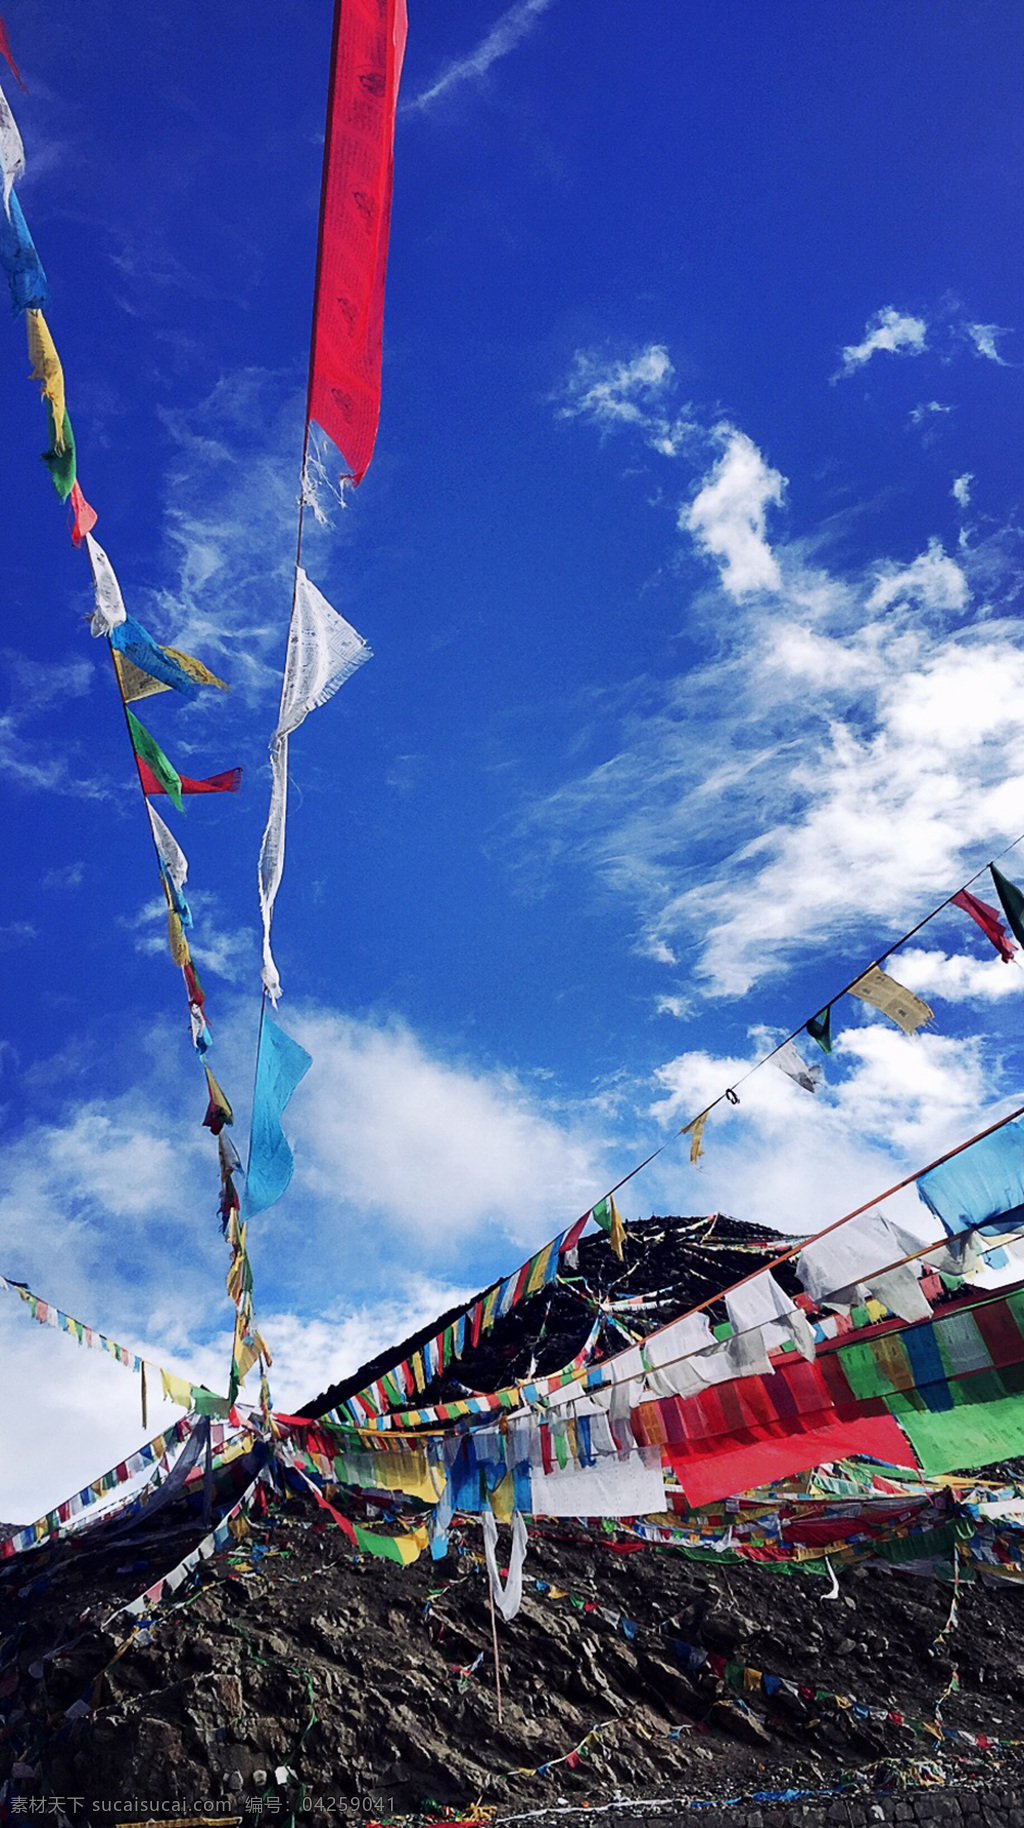 经幡 藏族 宗教 信仰 西藏 彩色 318 国道 风景 川藏线风景 旅游摄影 国内旅游